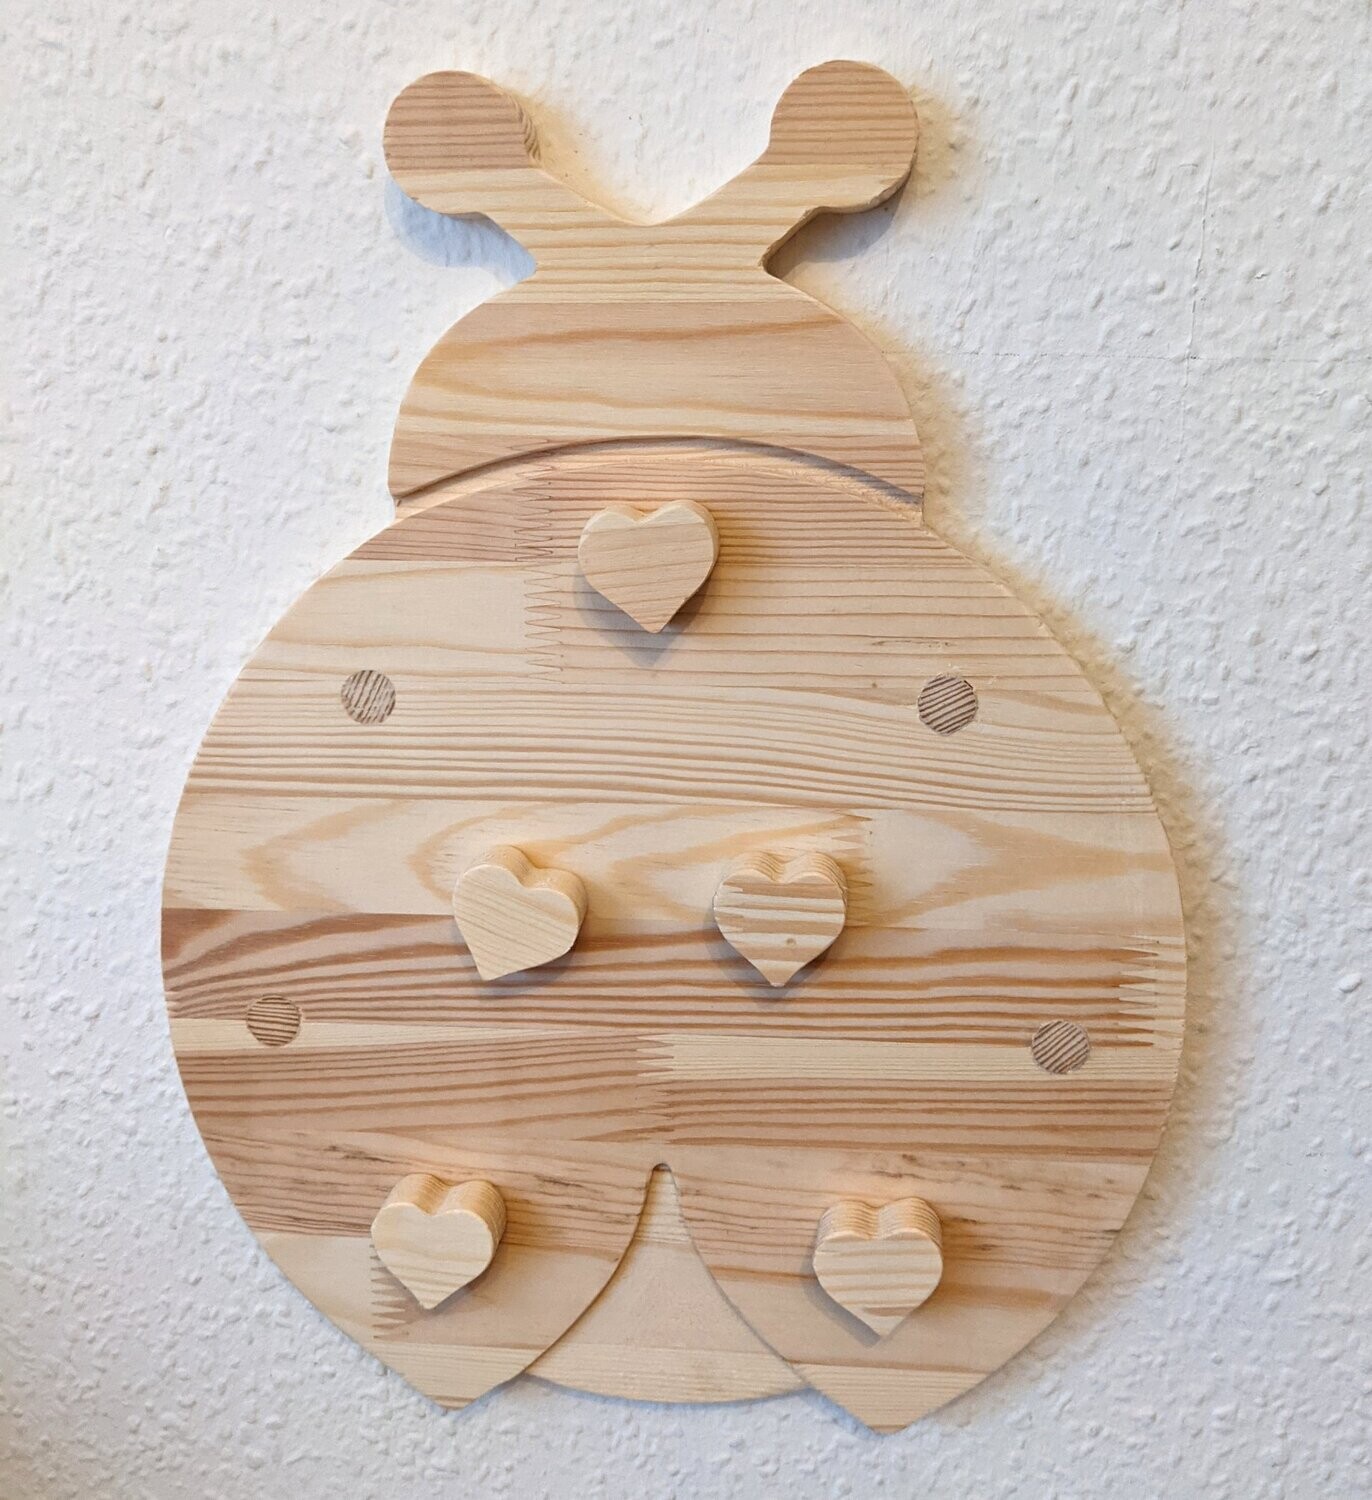 Magnettaffel aus Holz für Kinderzimmer mit Marienkäfer Motiv, inkl. 5x Holzmagnete